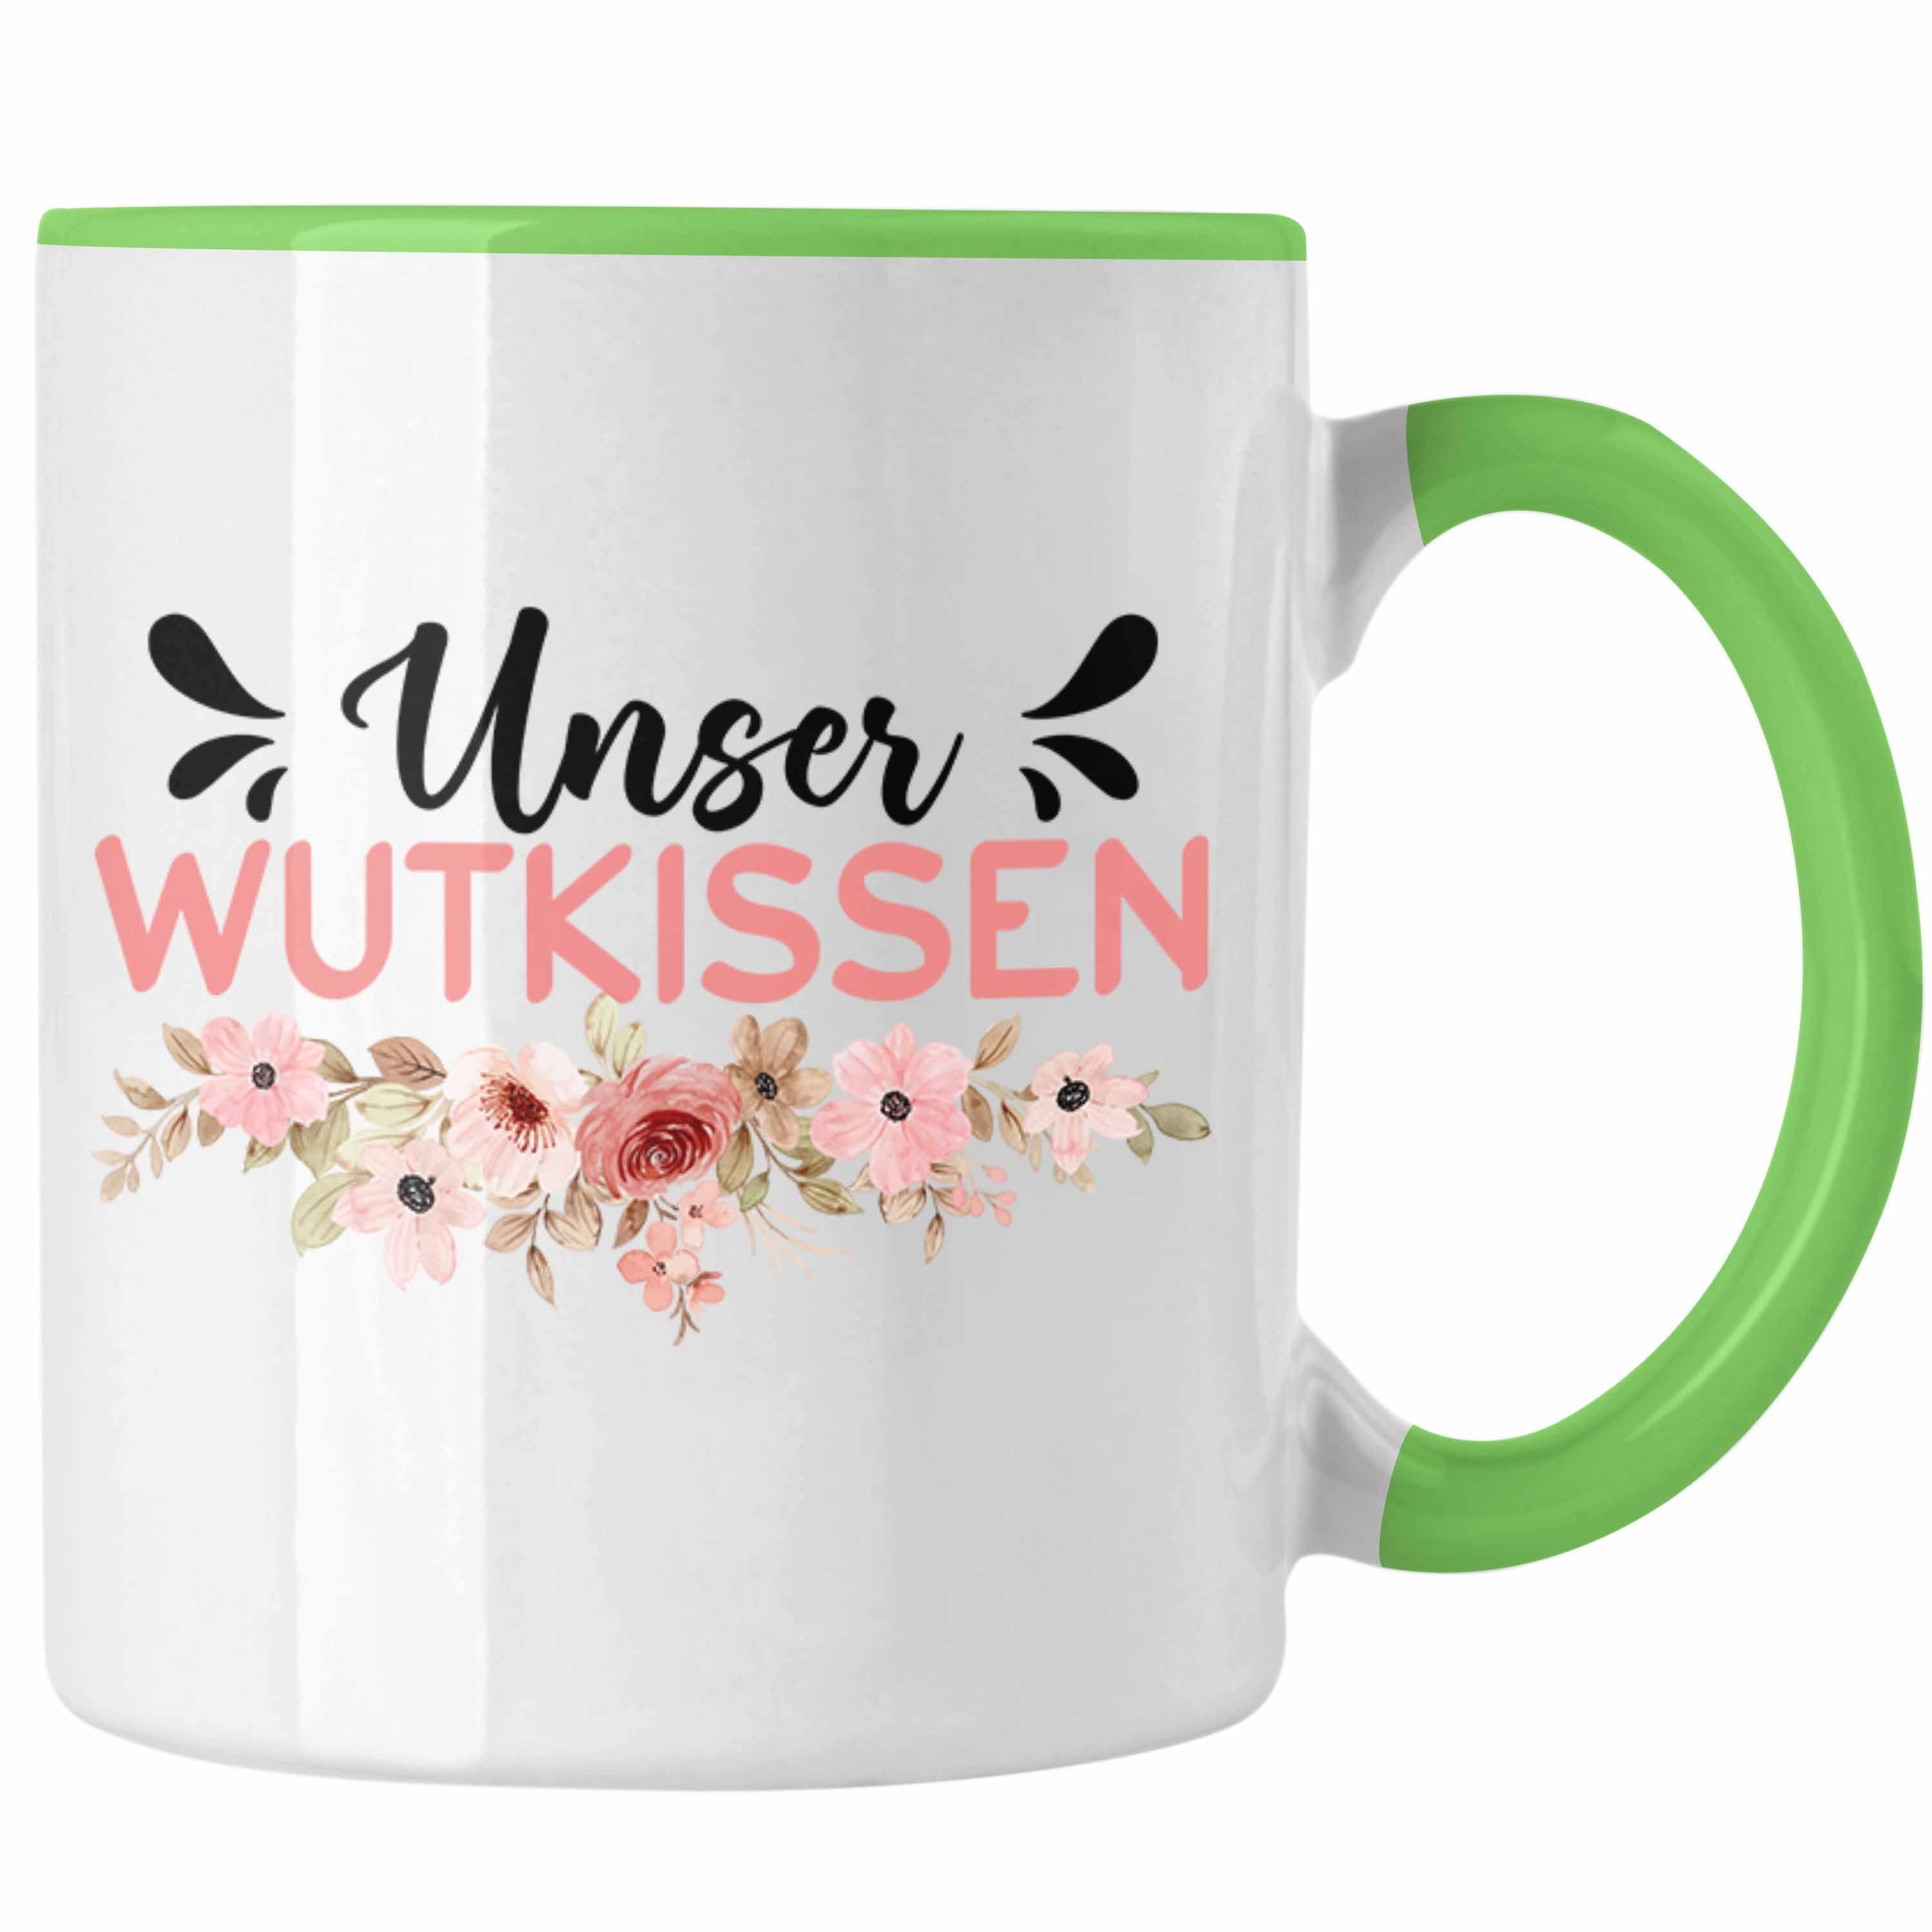 Spruch Wut-Kissen - Tasse Trendation Tasse Geschenk Wutkissen Trendation Grün Lustiger